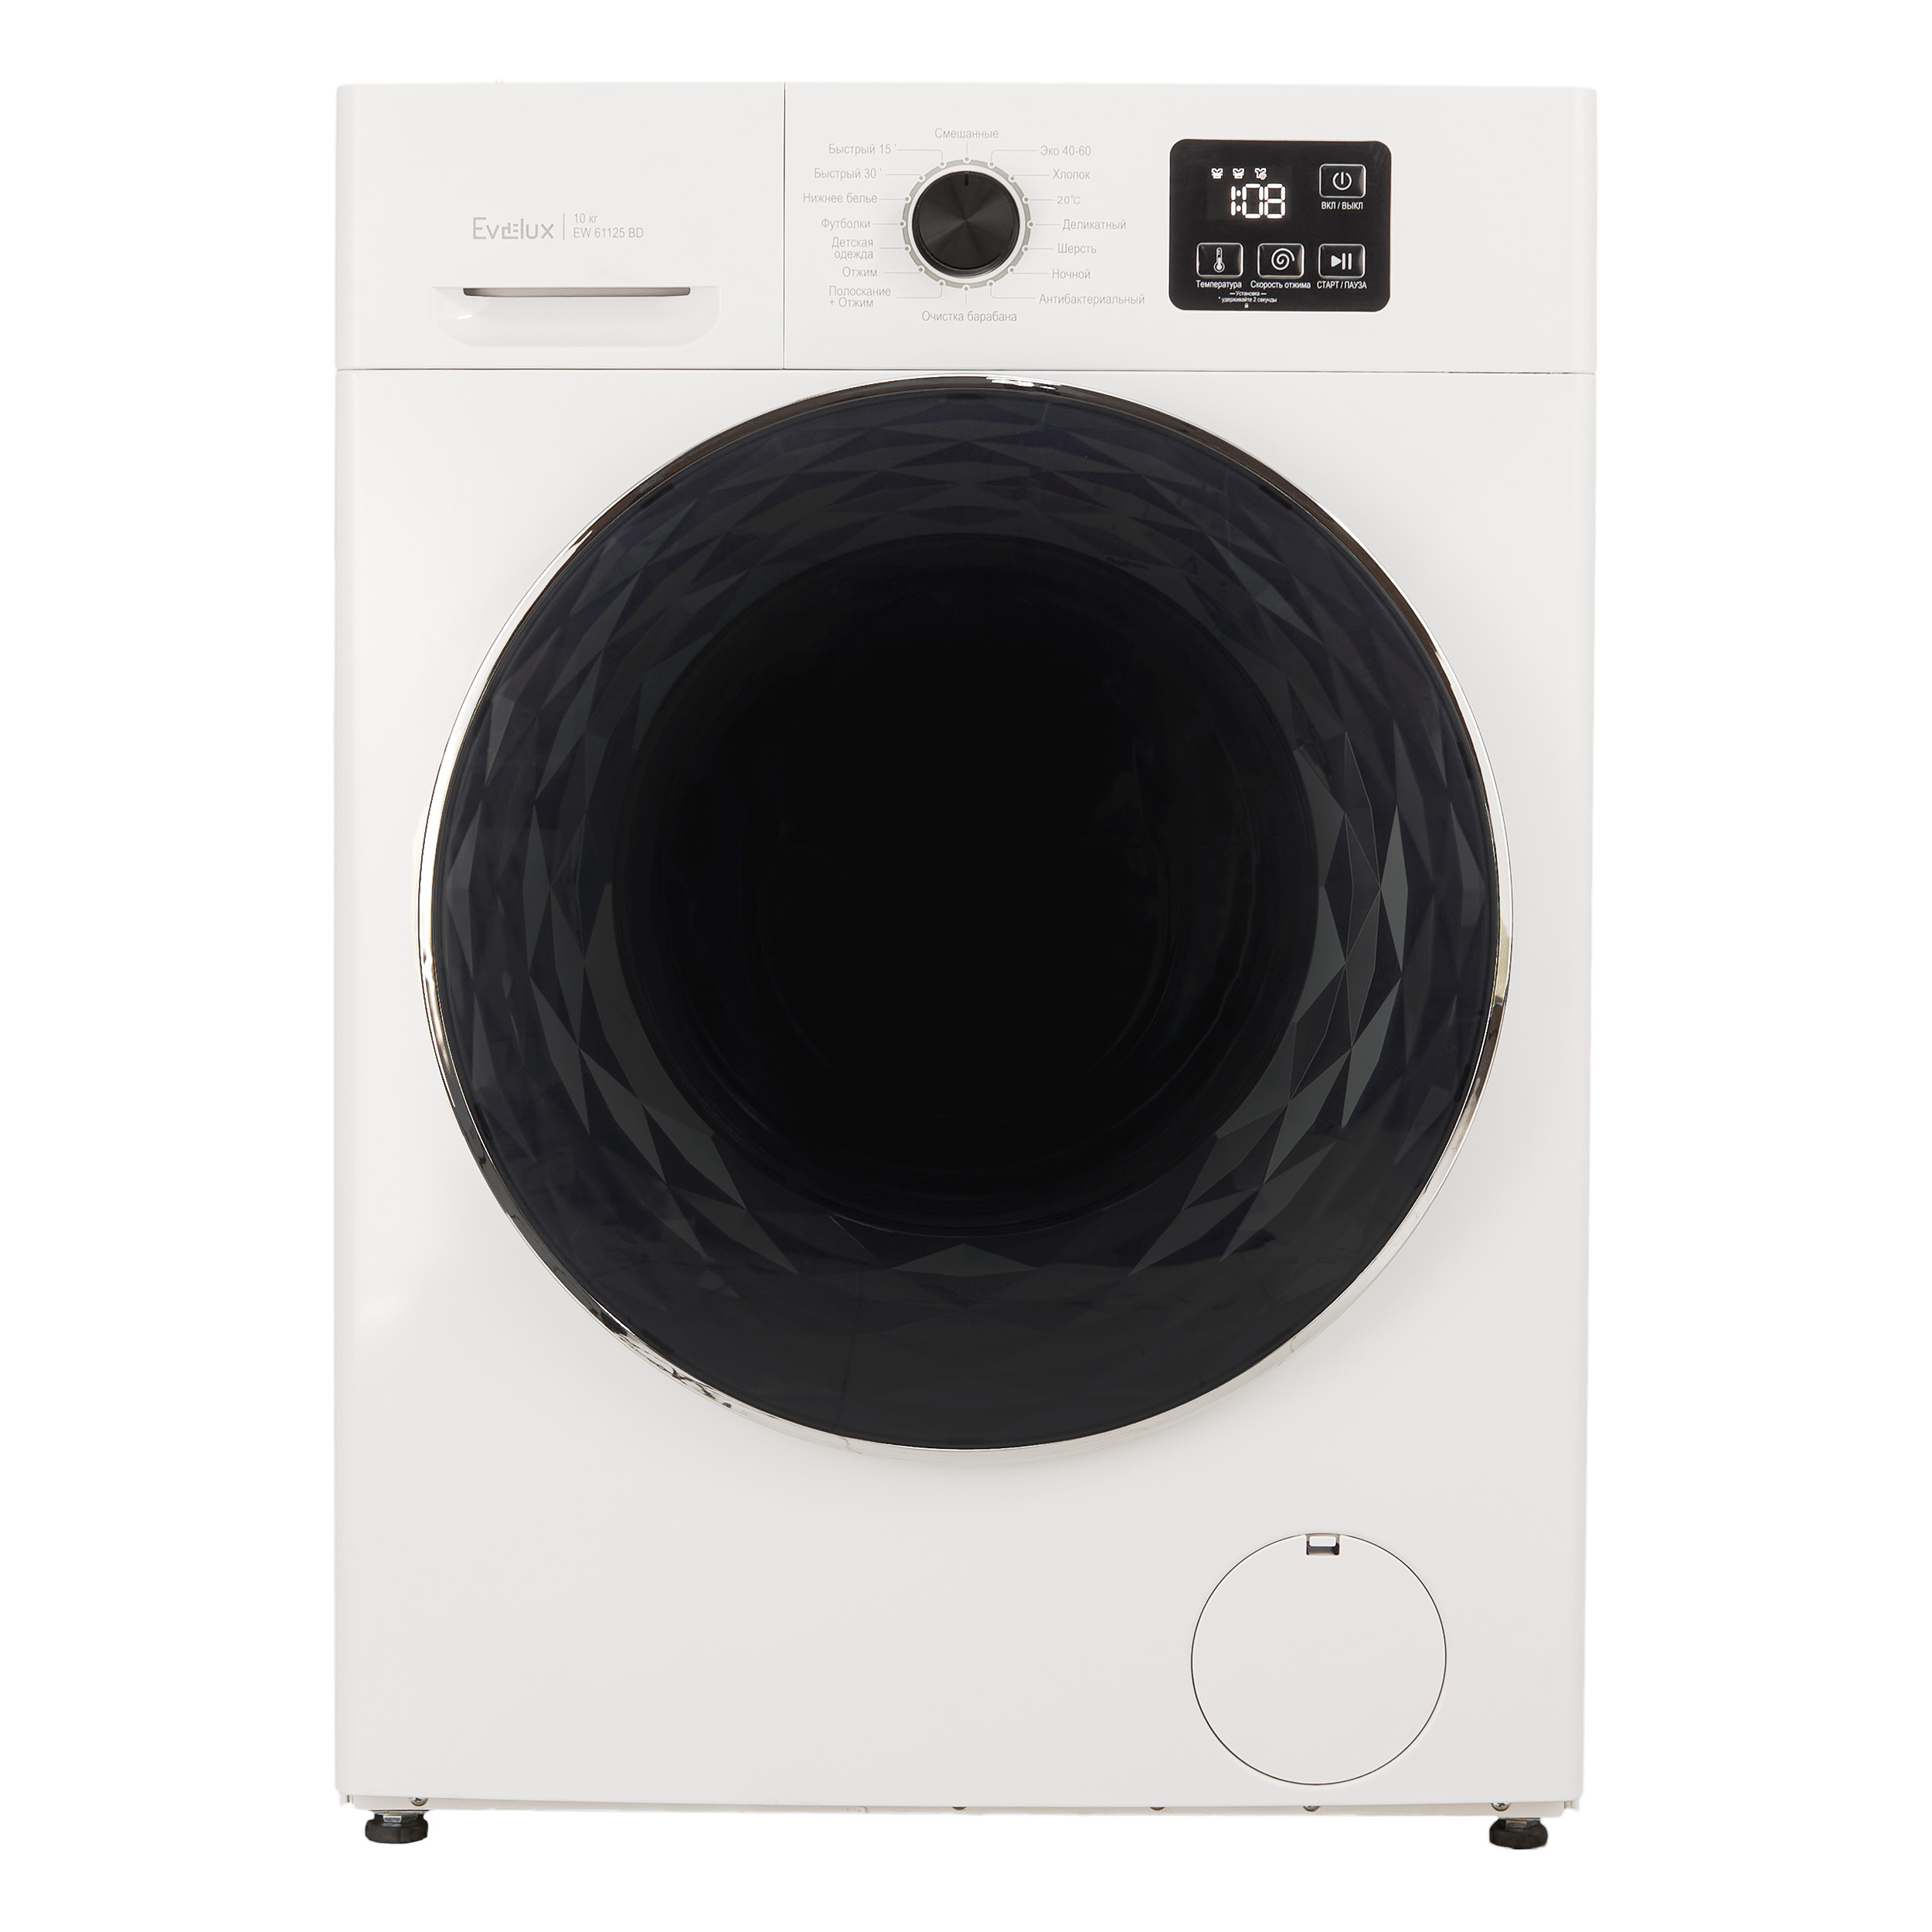 Стиральная машина Evelux EW 61125 BD белый стиральная машина whirlpool w7x w845wb ee белый